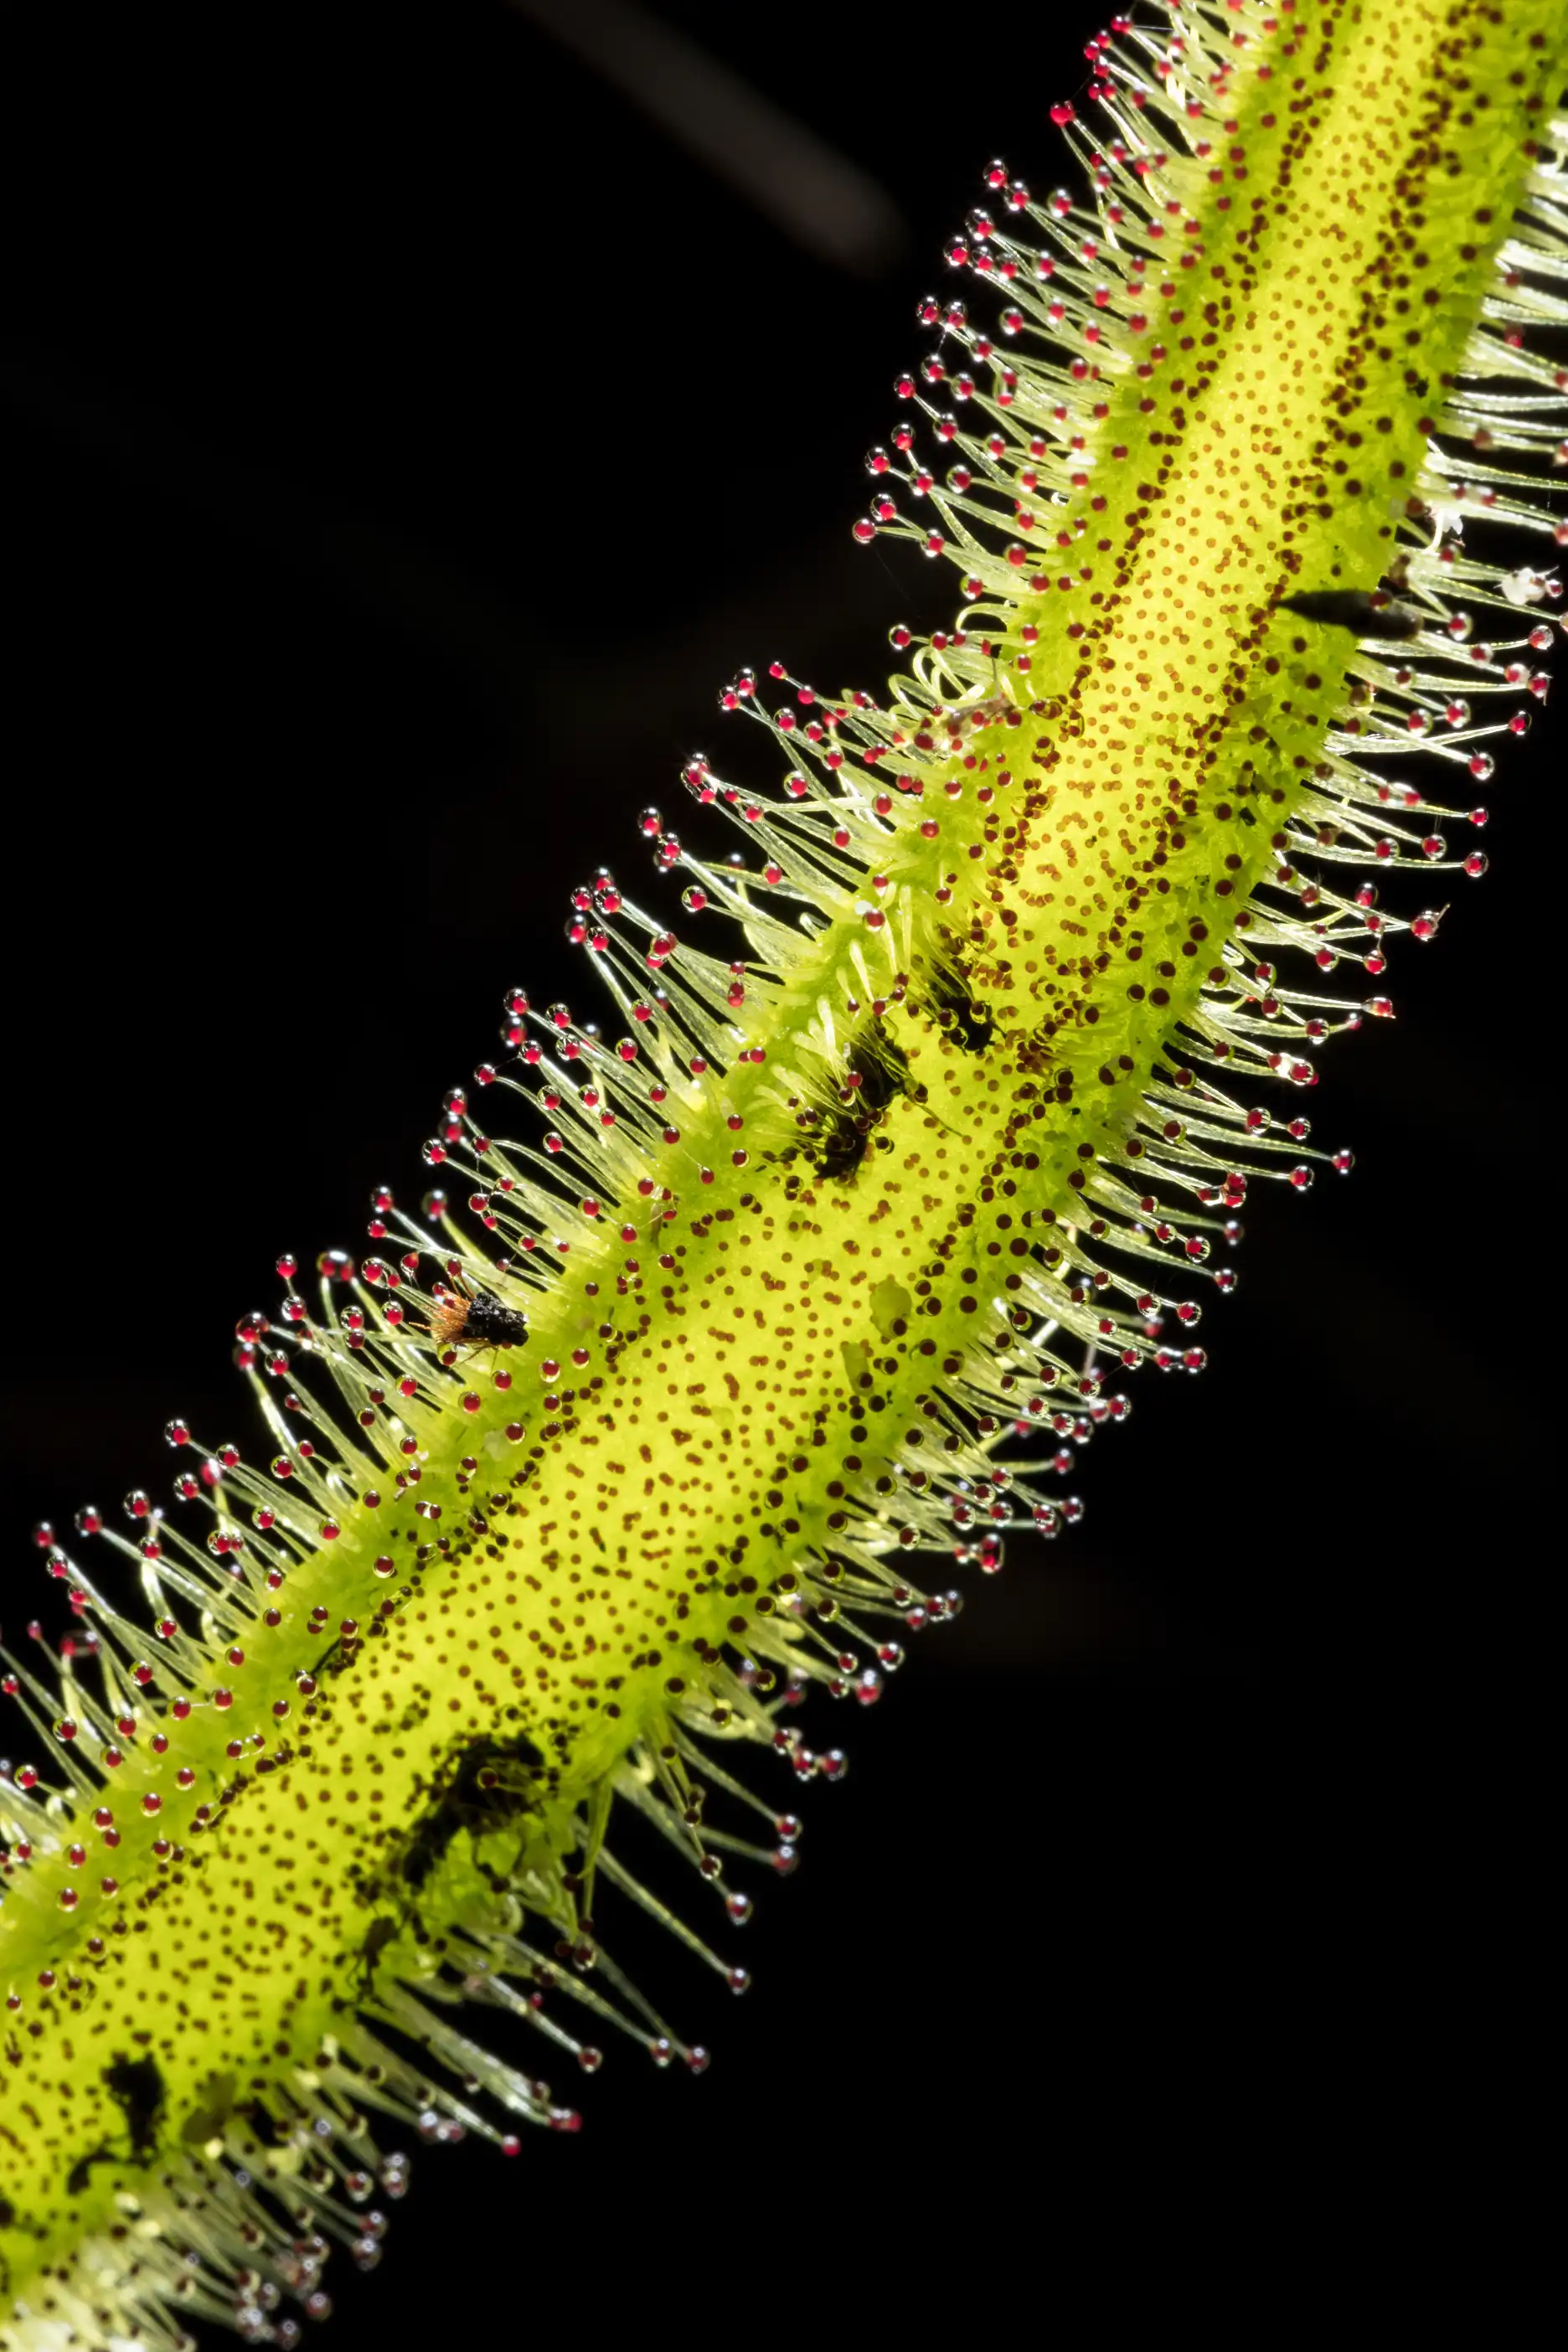 Drosera binata var dichotoma leaf detail